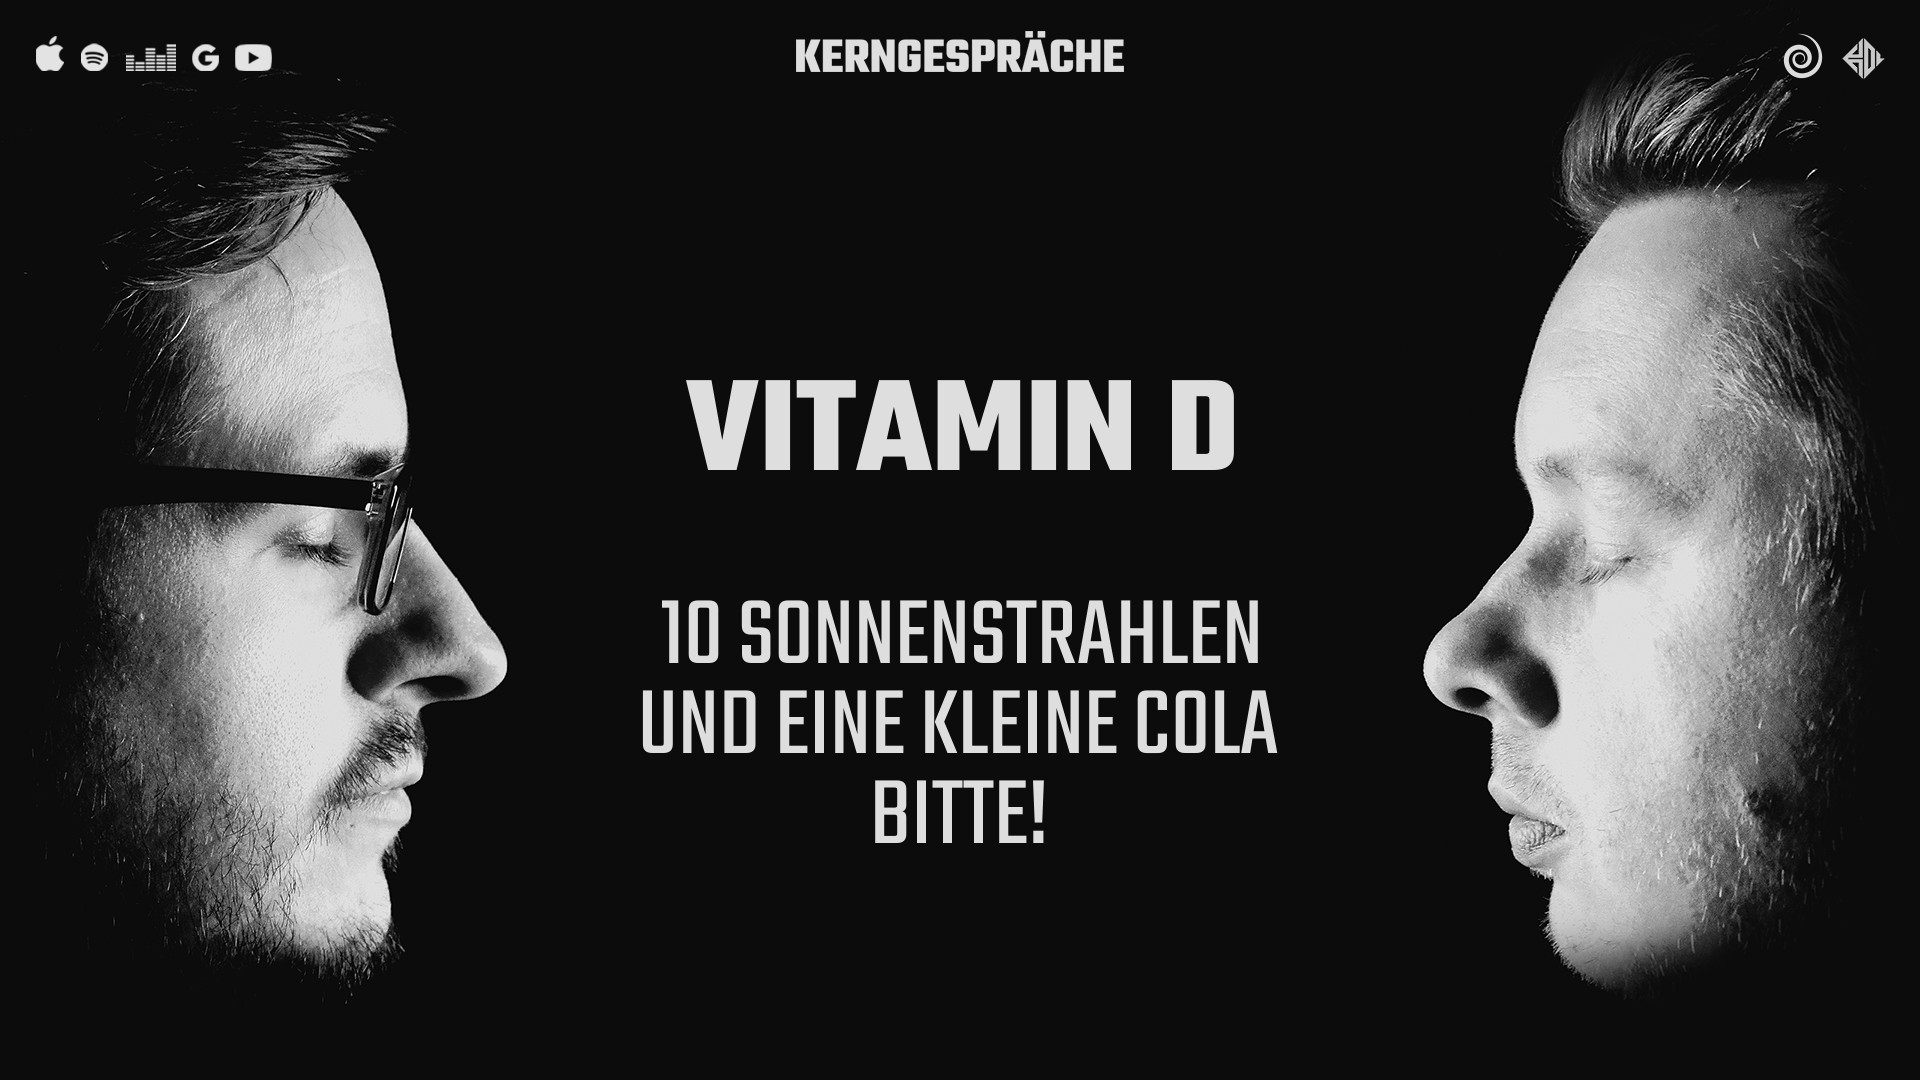 Vitamin D: 10 Sonnenstrahlen und eine kleine Cola bitte!